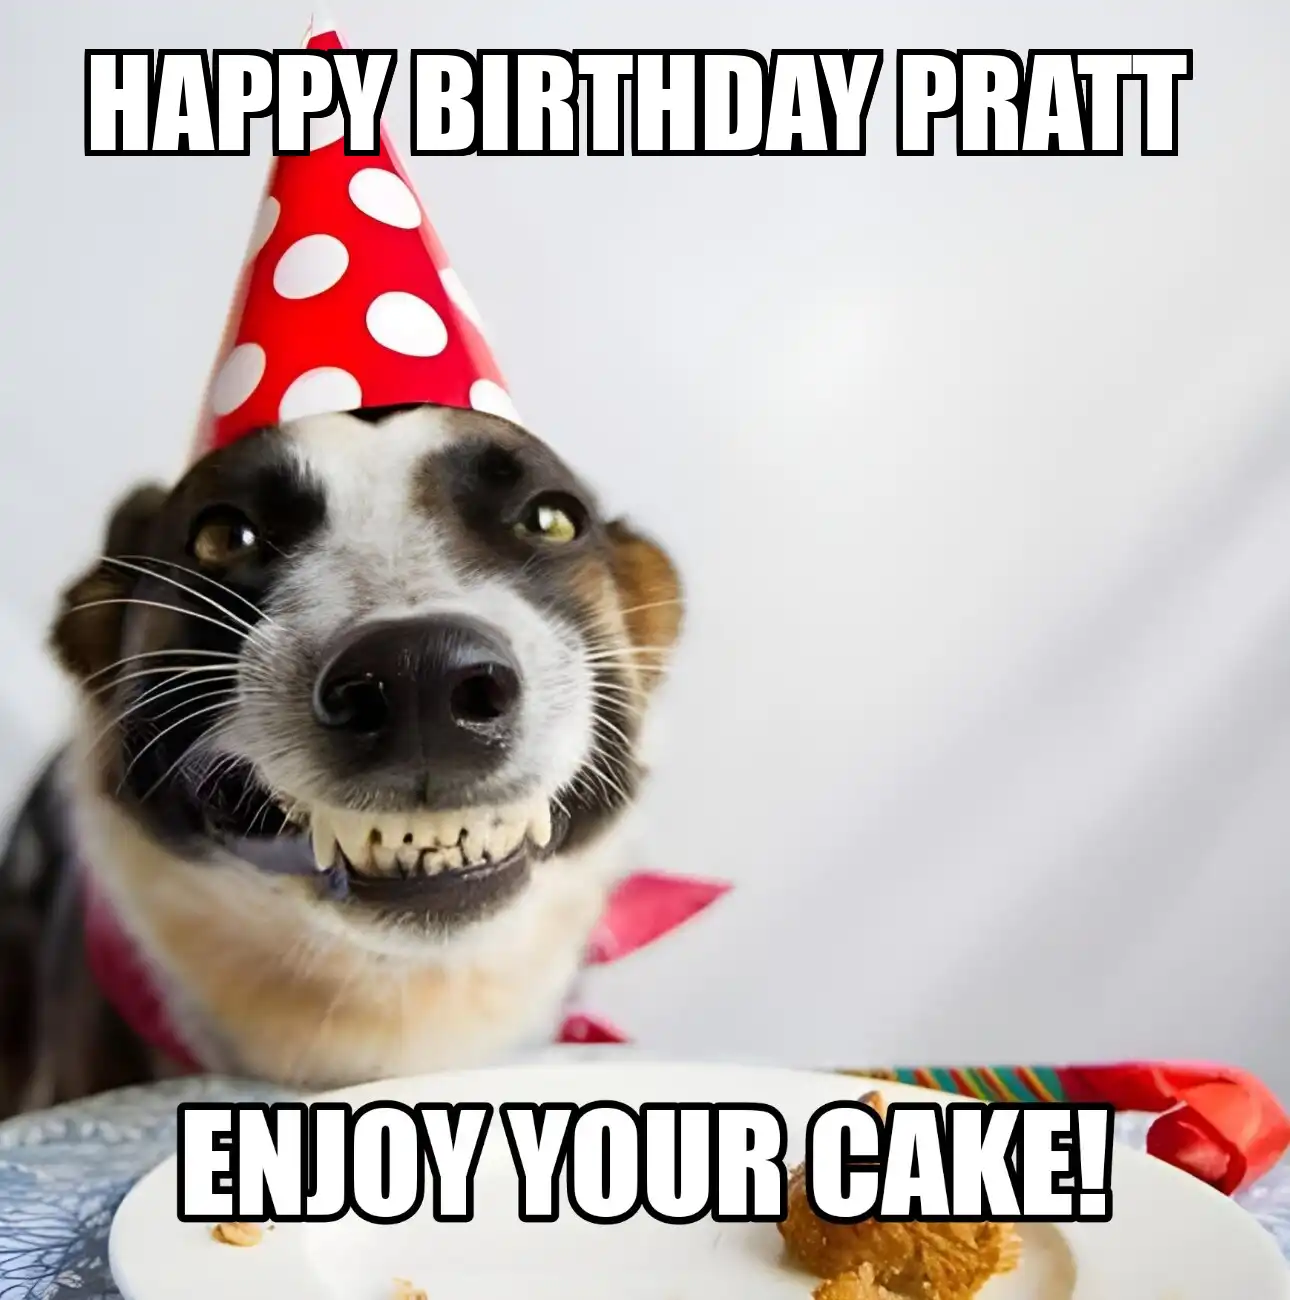 Happy Birthday Pratt Enjoy Your Cake Dog Meme